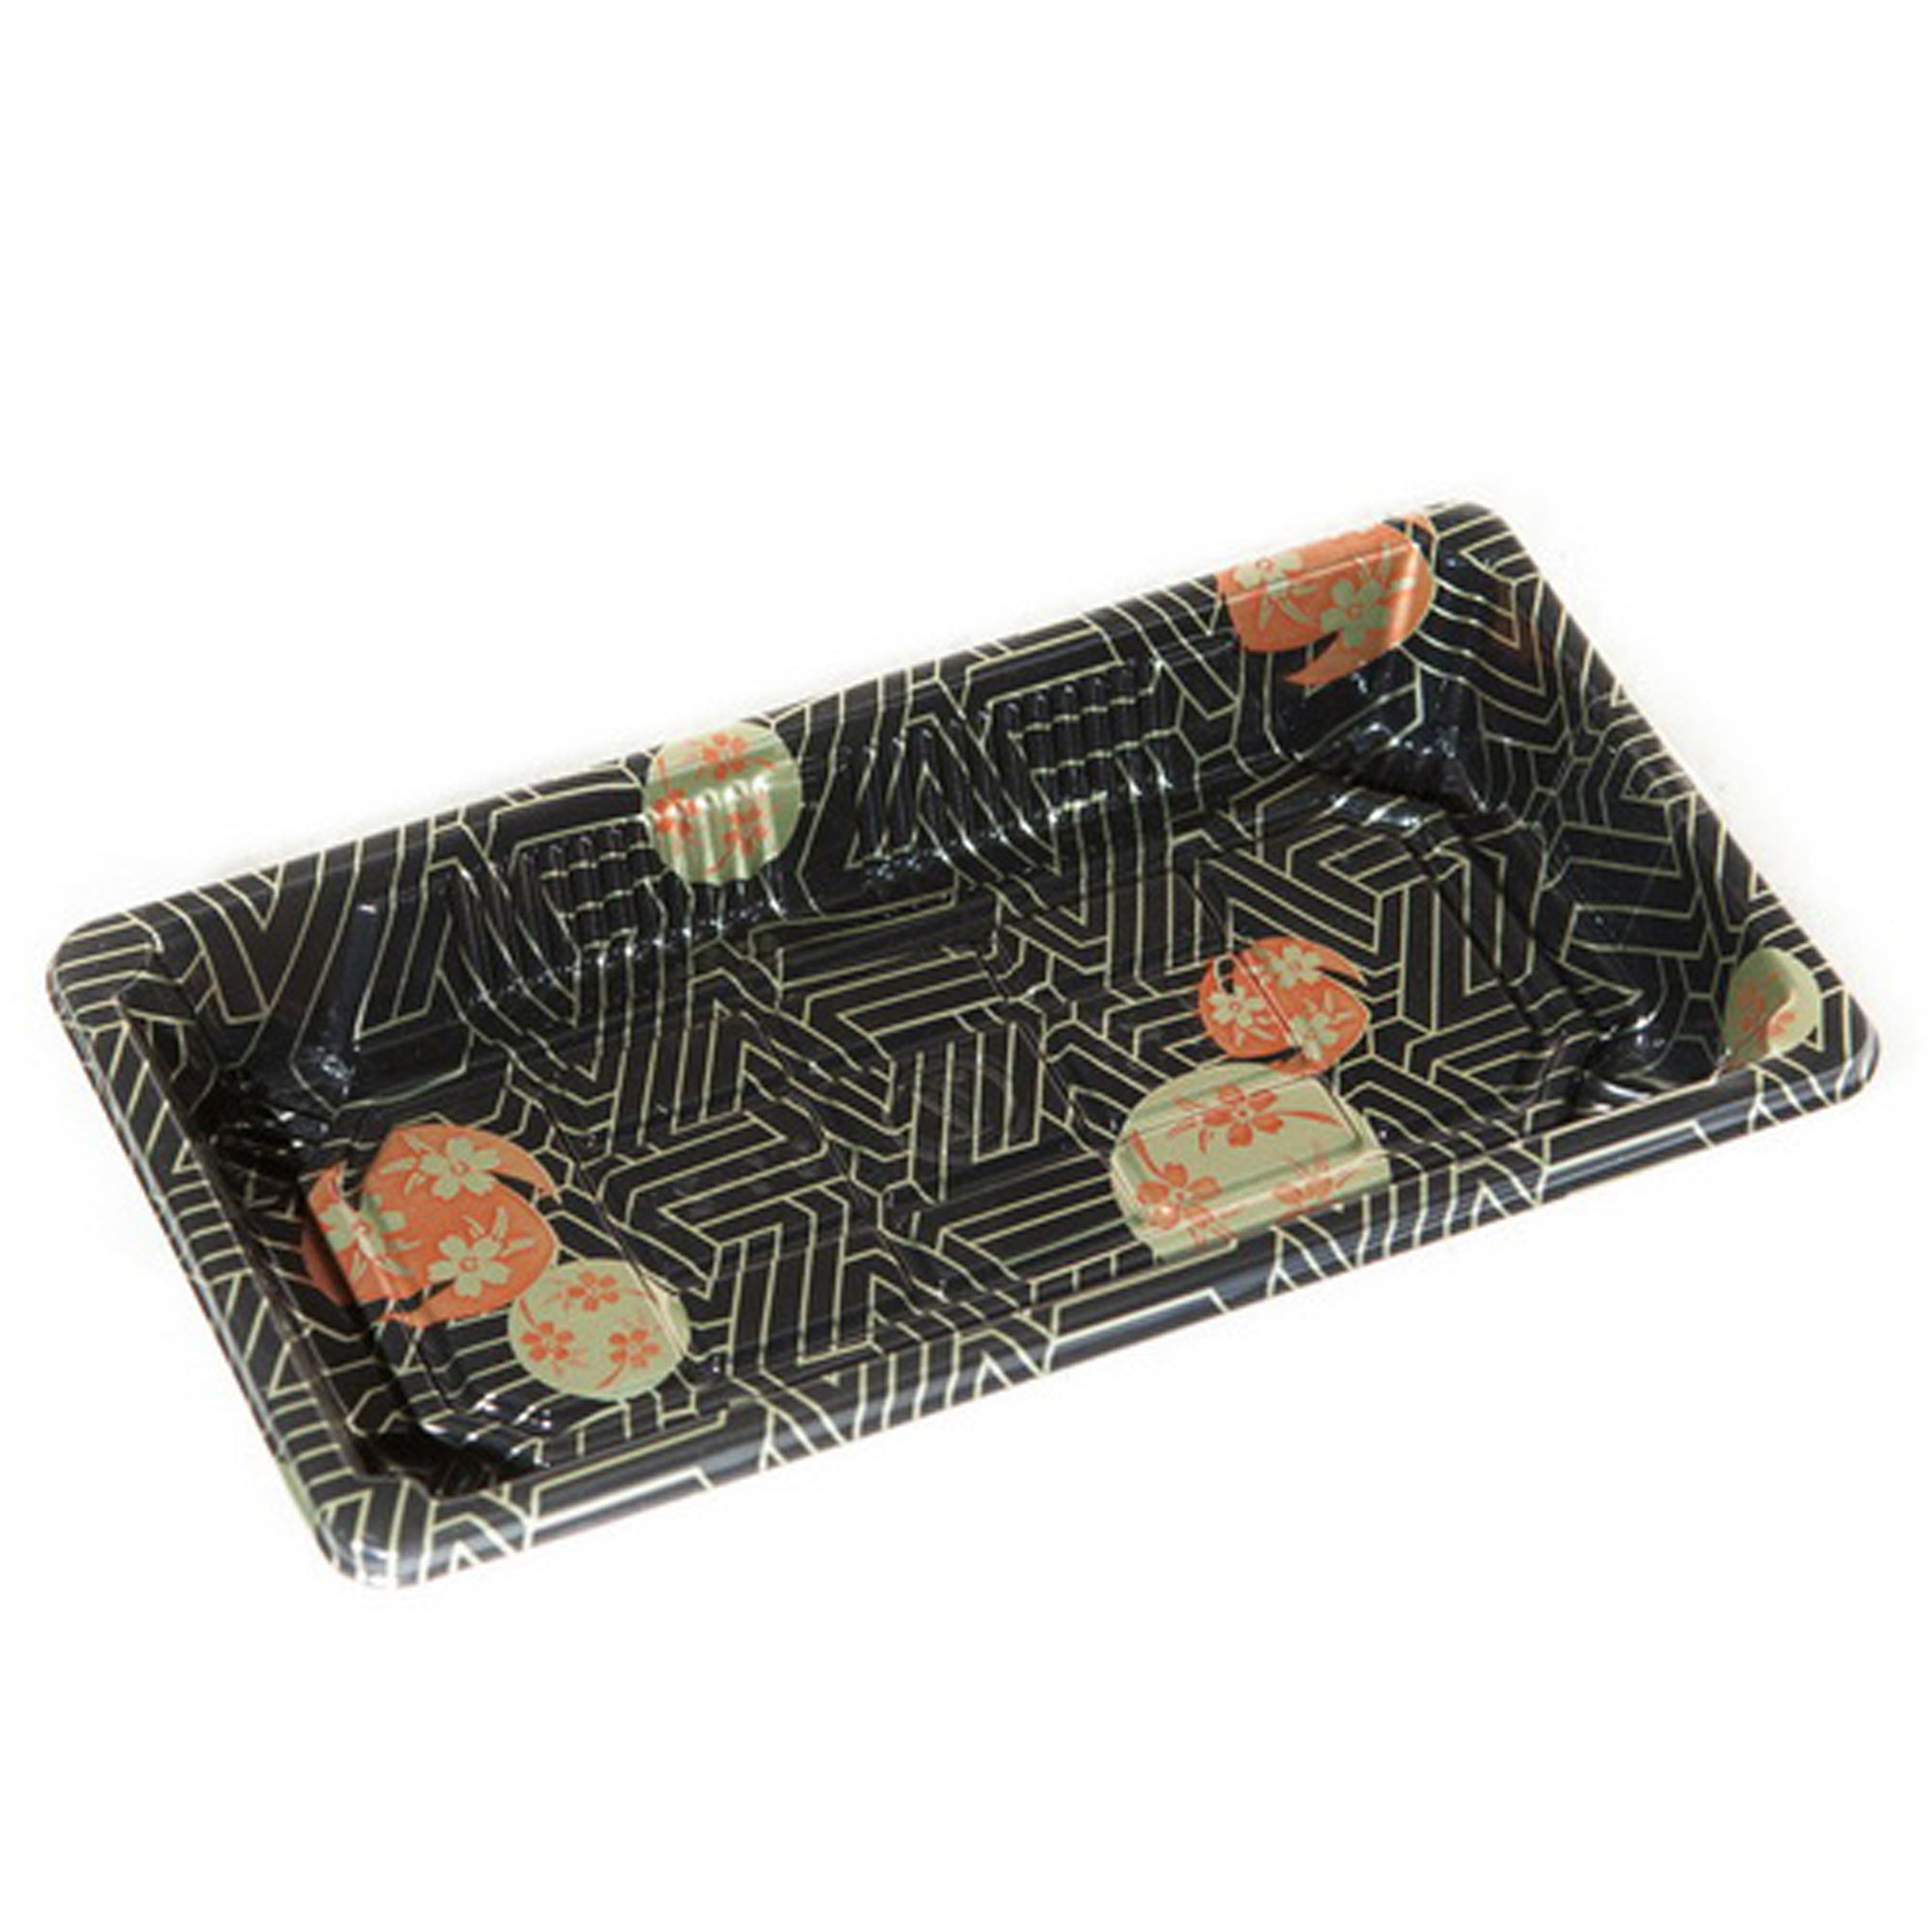 TZ-0.6 Disposable Black Sakura Design Take Out Sushi Trays 6 3/8